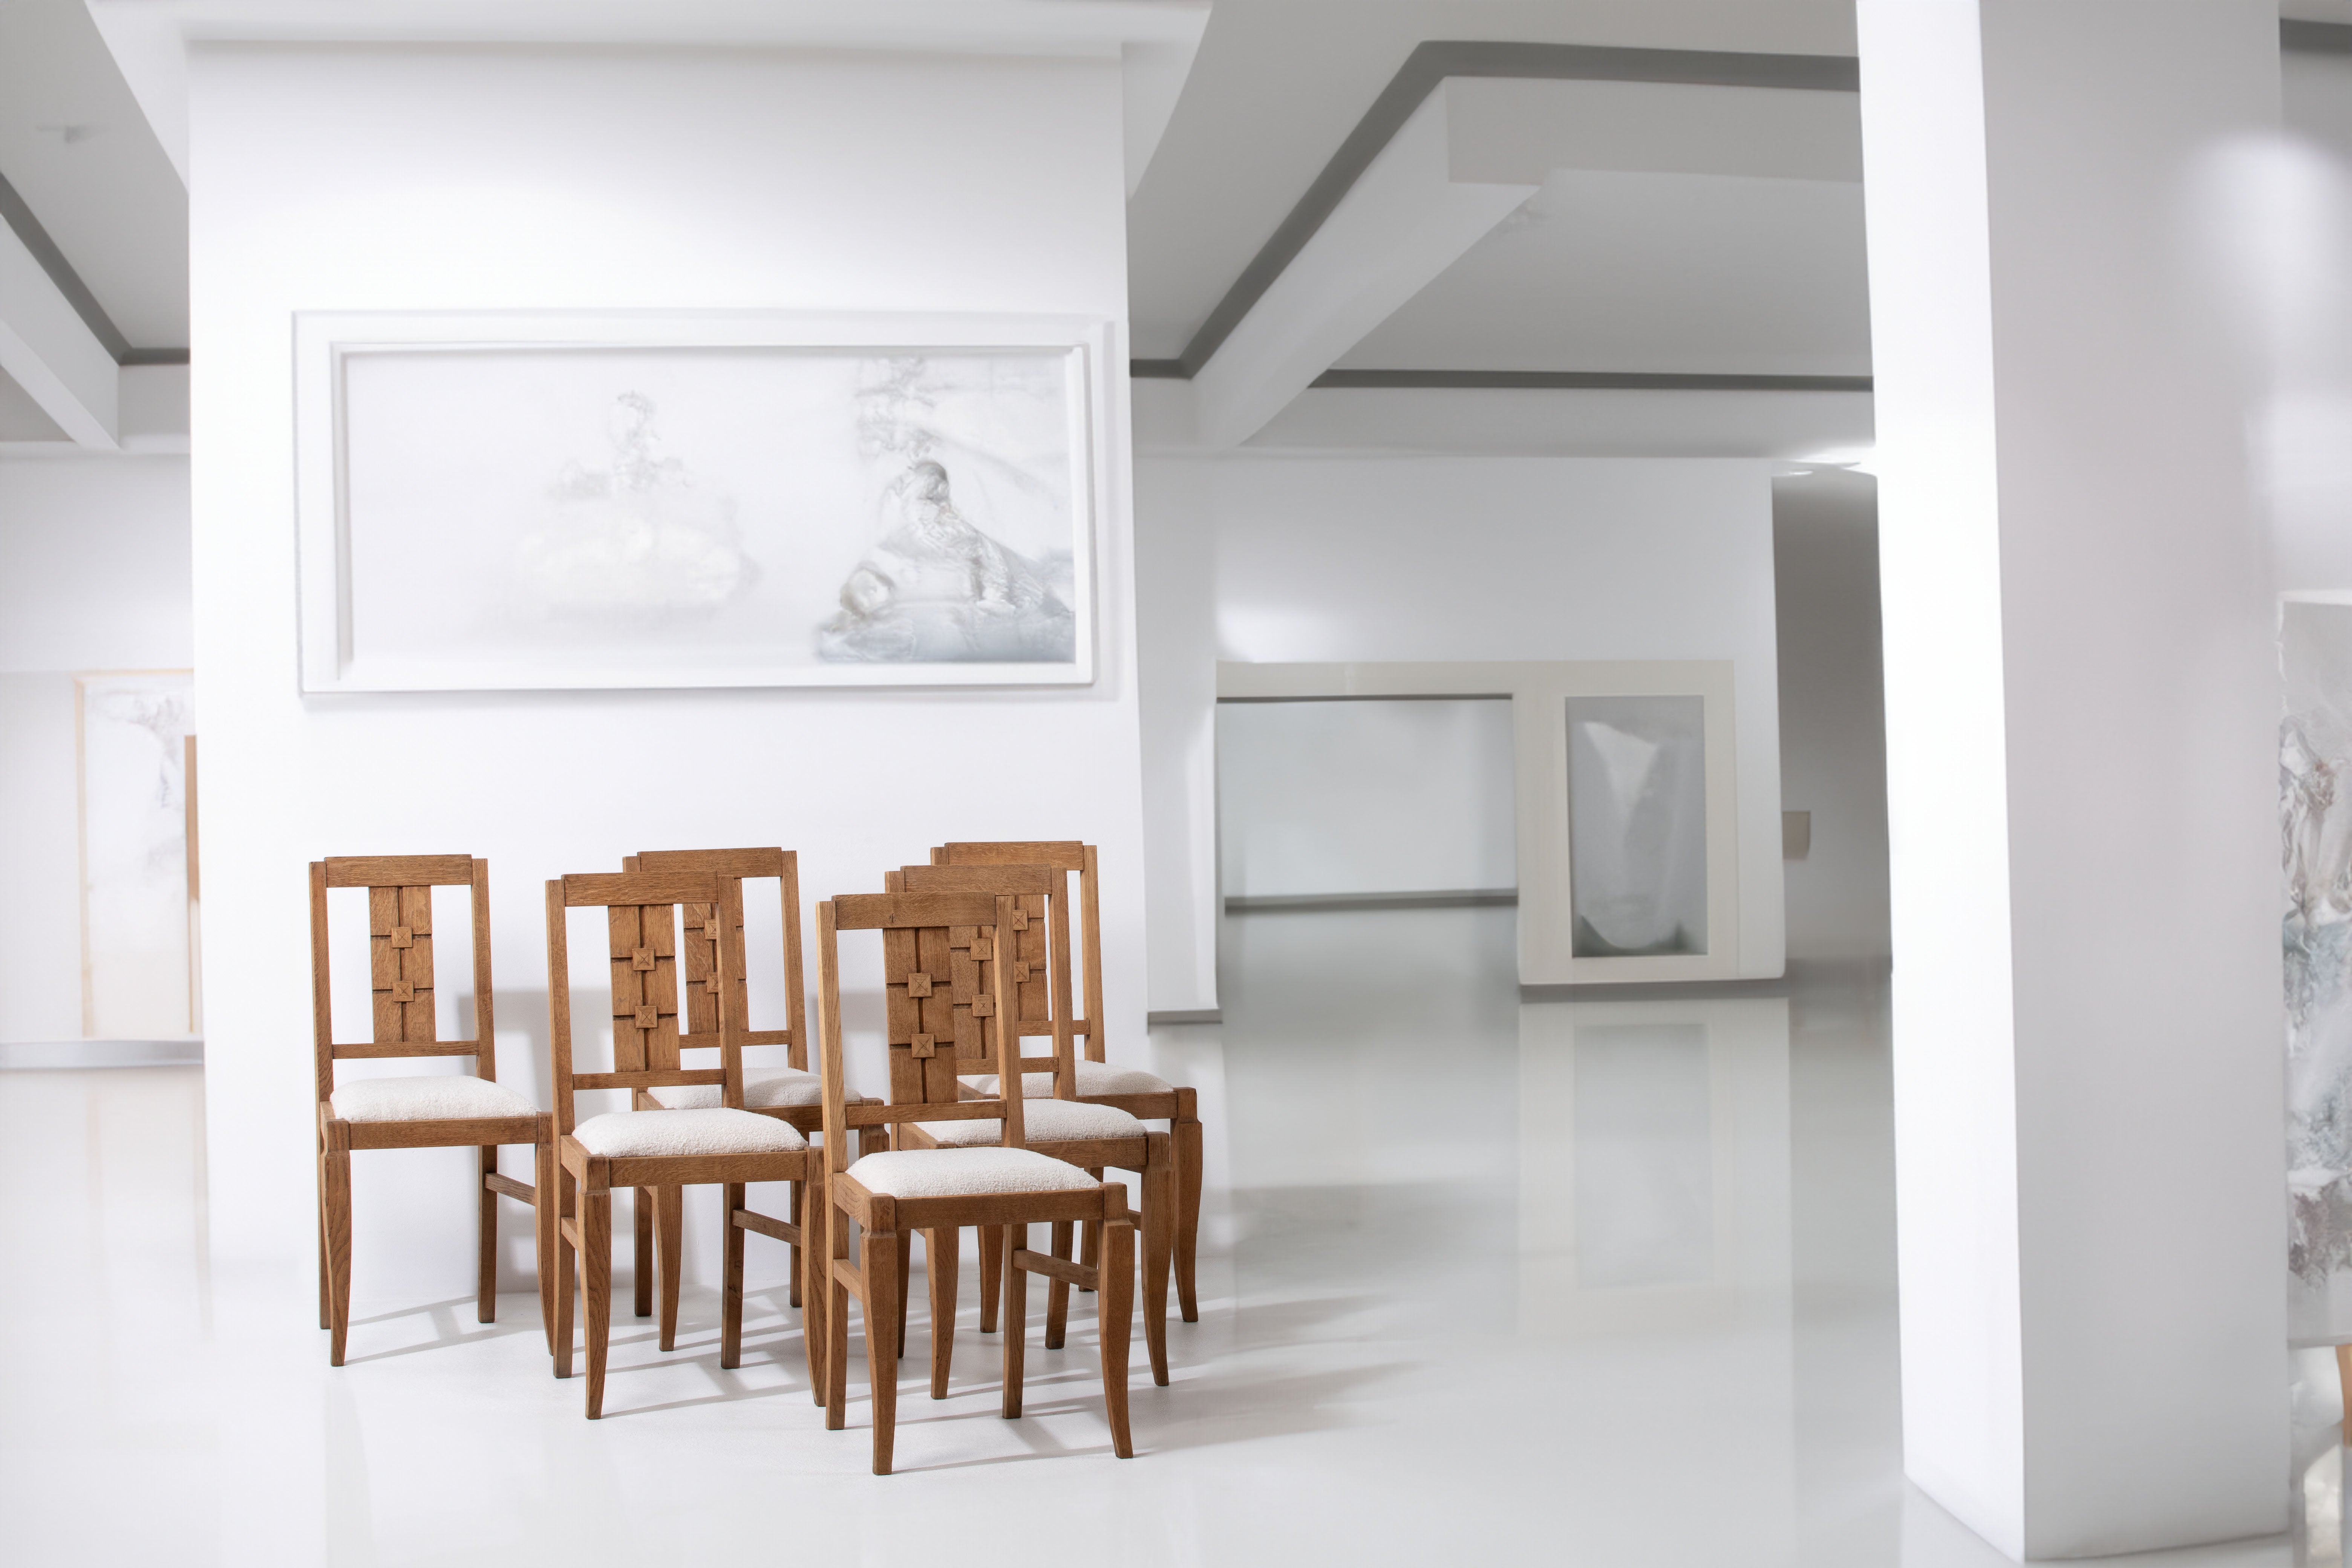 Voici un ensemble captivant de six chaises de salle à manger Art déco françaises des années 1940, fabriquées de manière experte en chêne massif. Cet ensemble exceptionnel présente un mélange artistique de lignes courbes et droites, créant un mariage